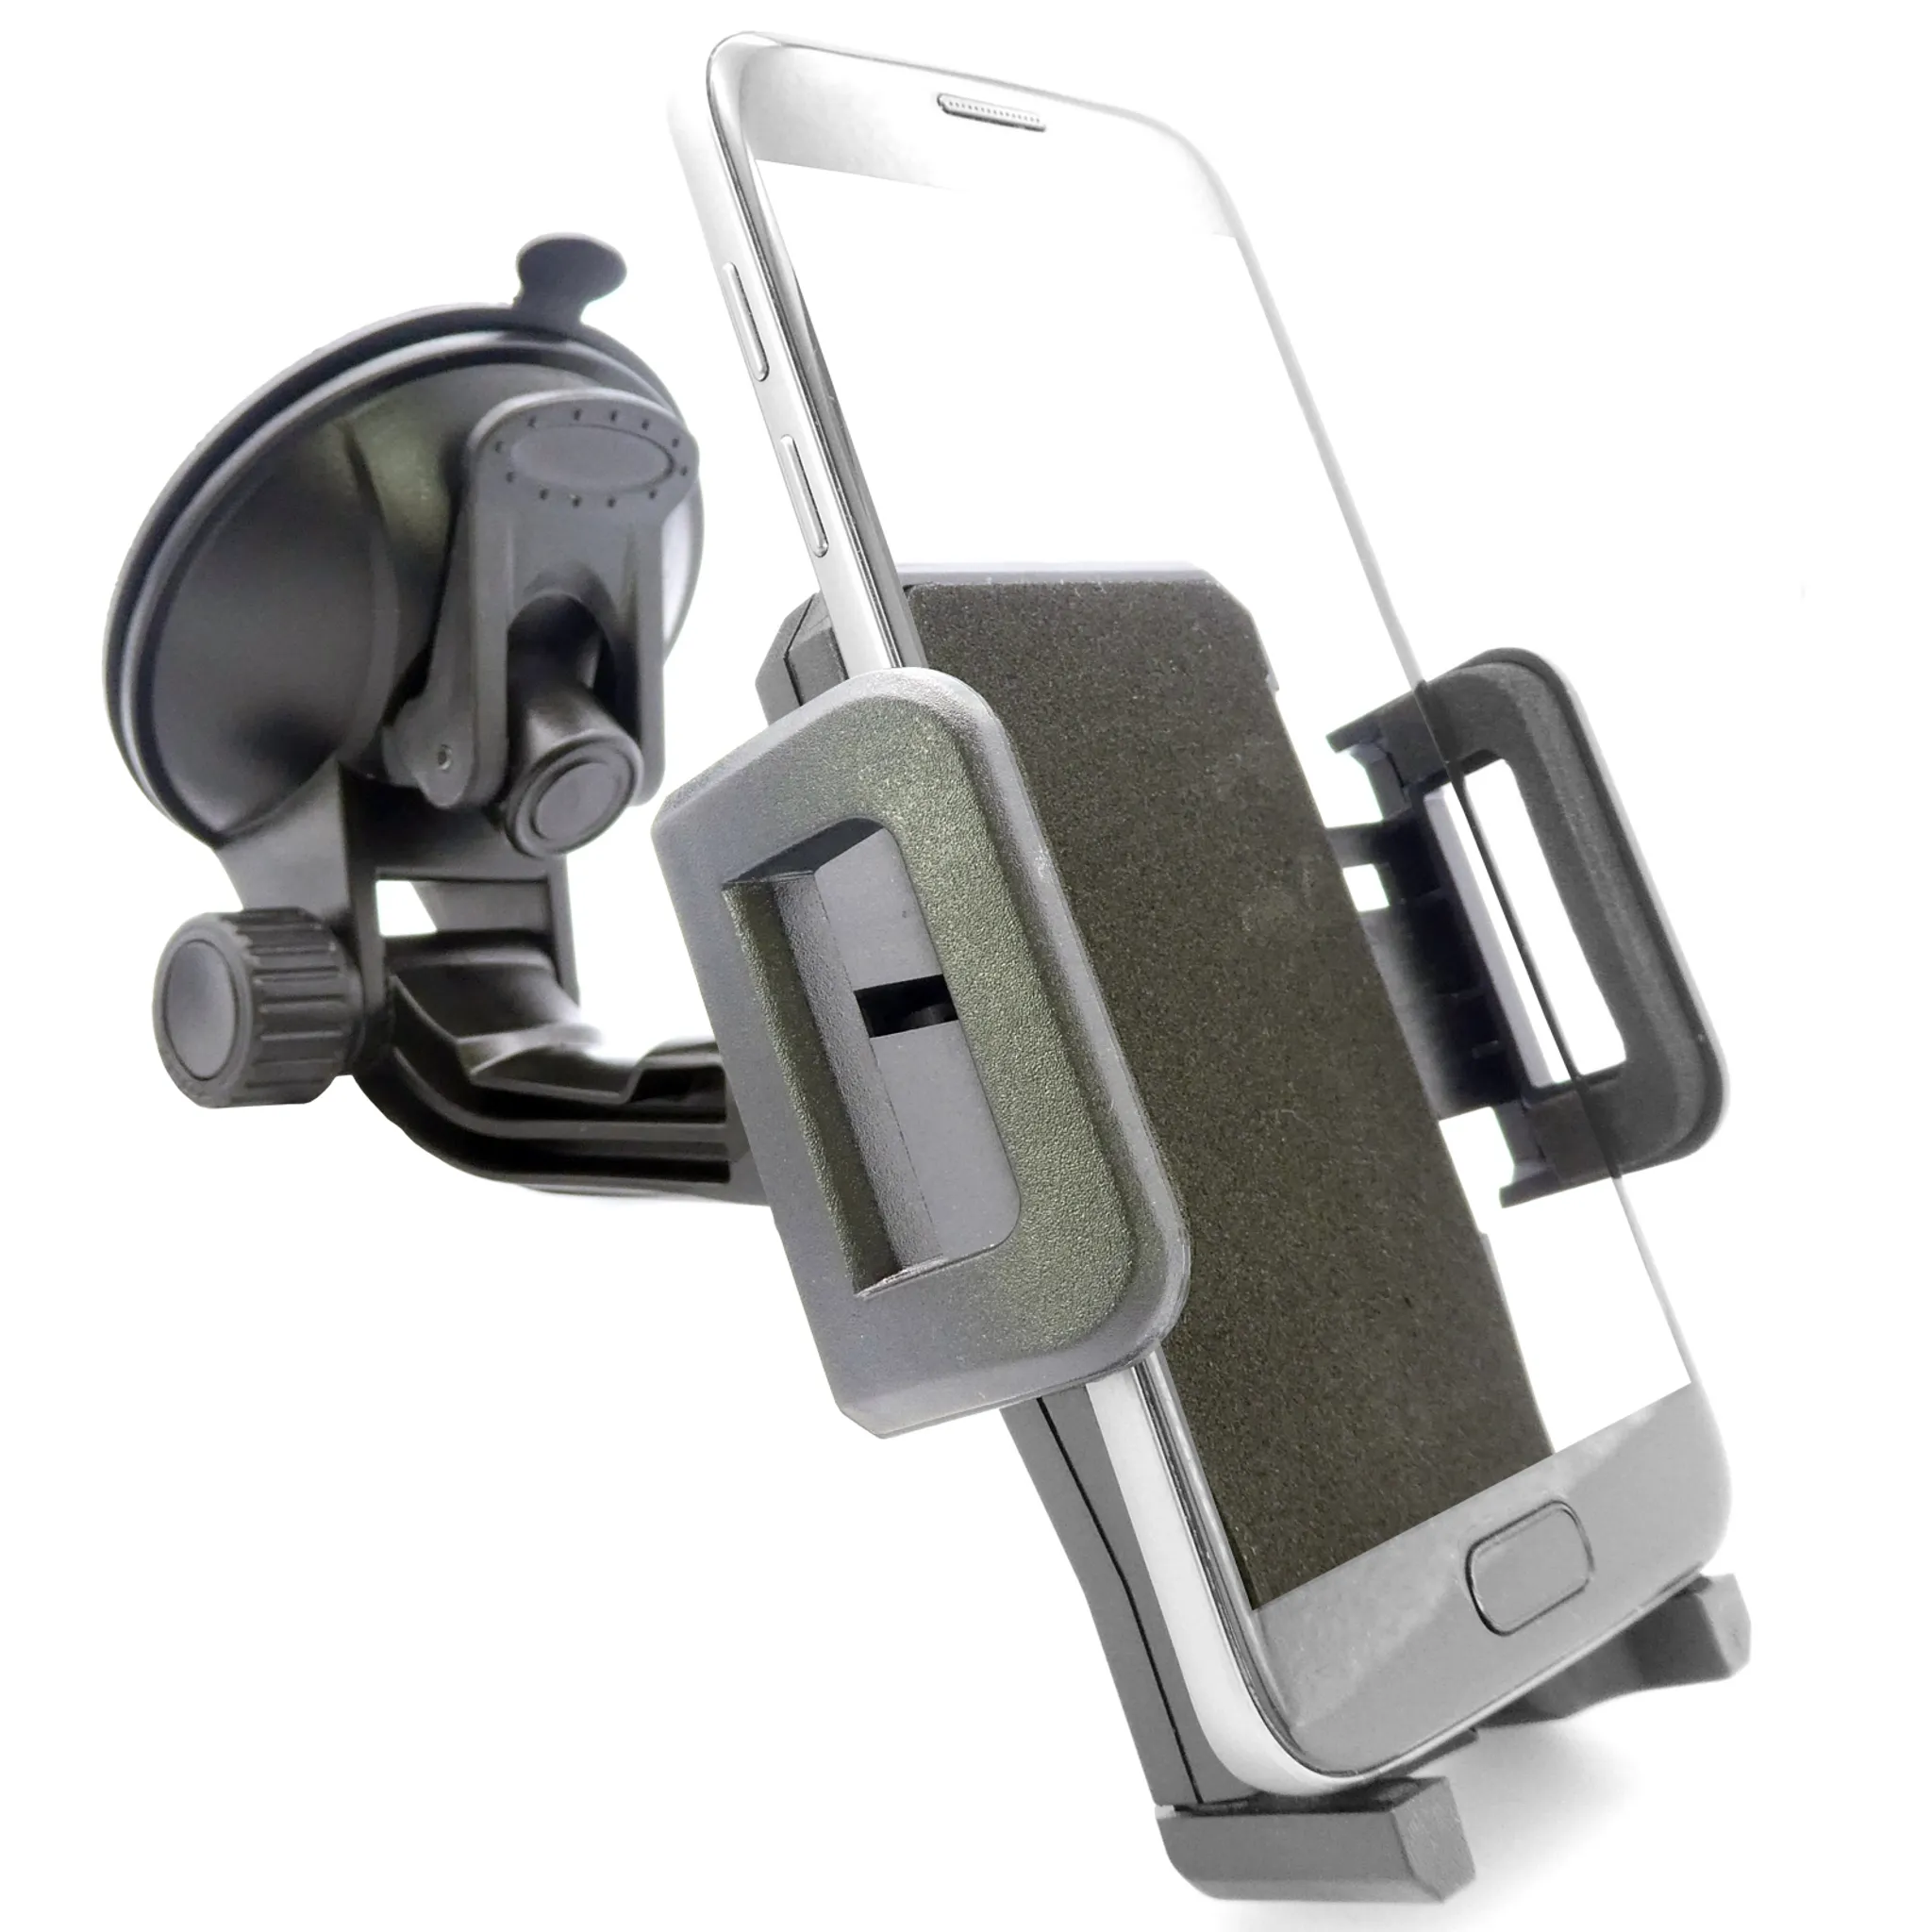 Magnet Halterung Smartphone KFZ Armaturenbrett 360° Universal Handy Auto  Halter kaufen bei